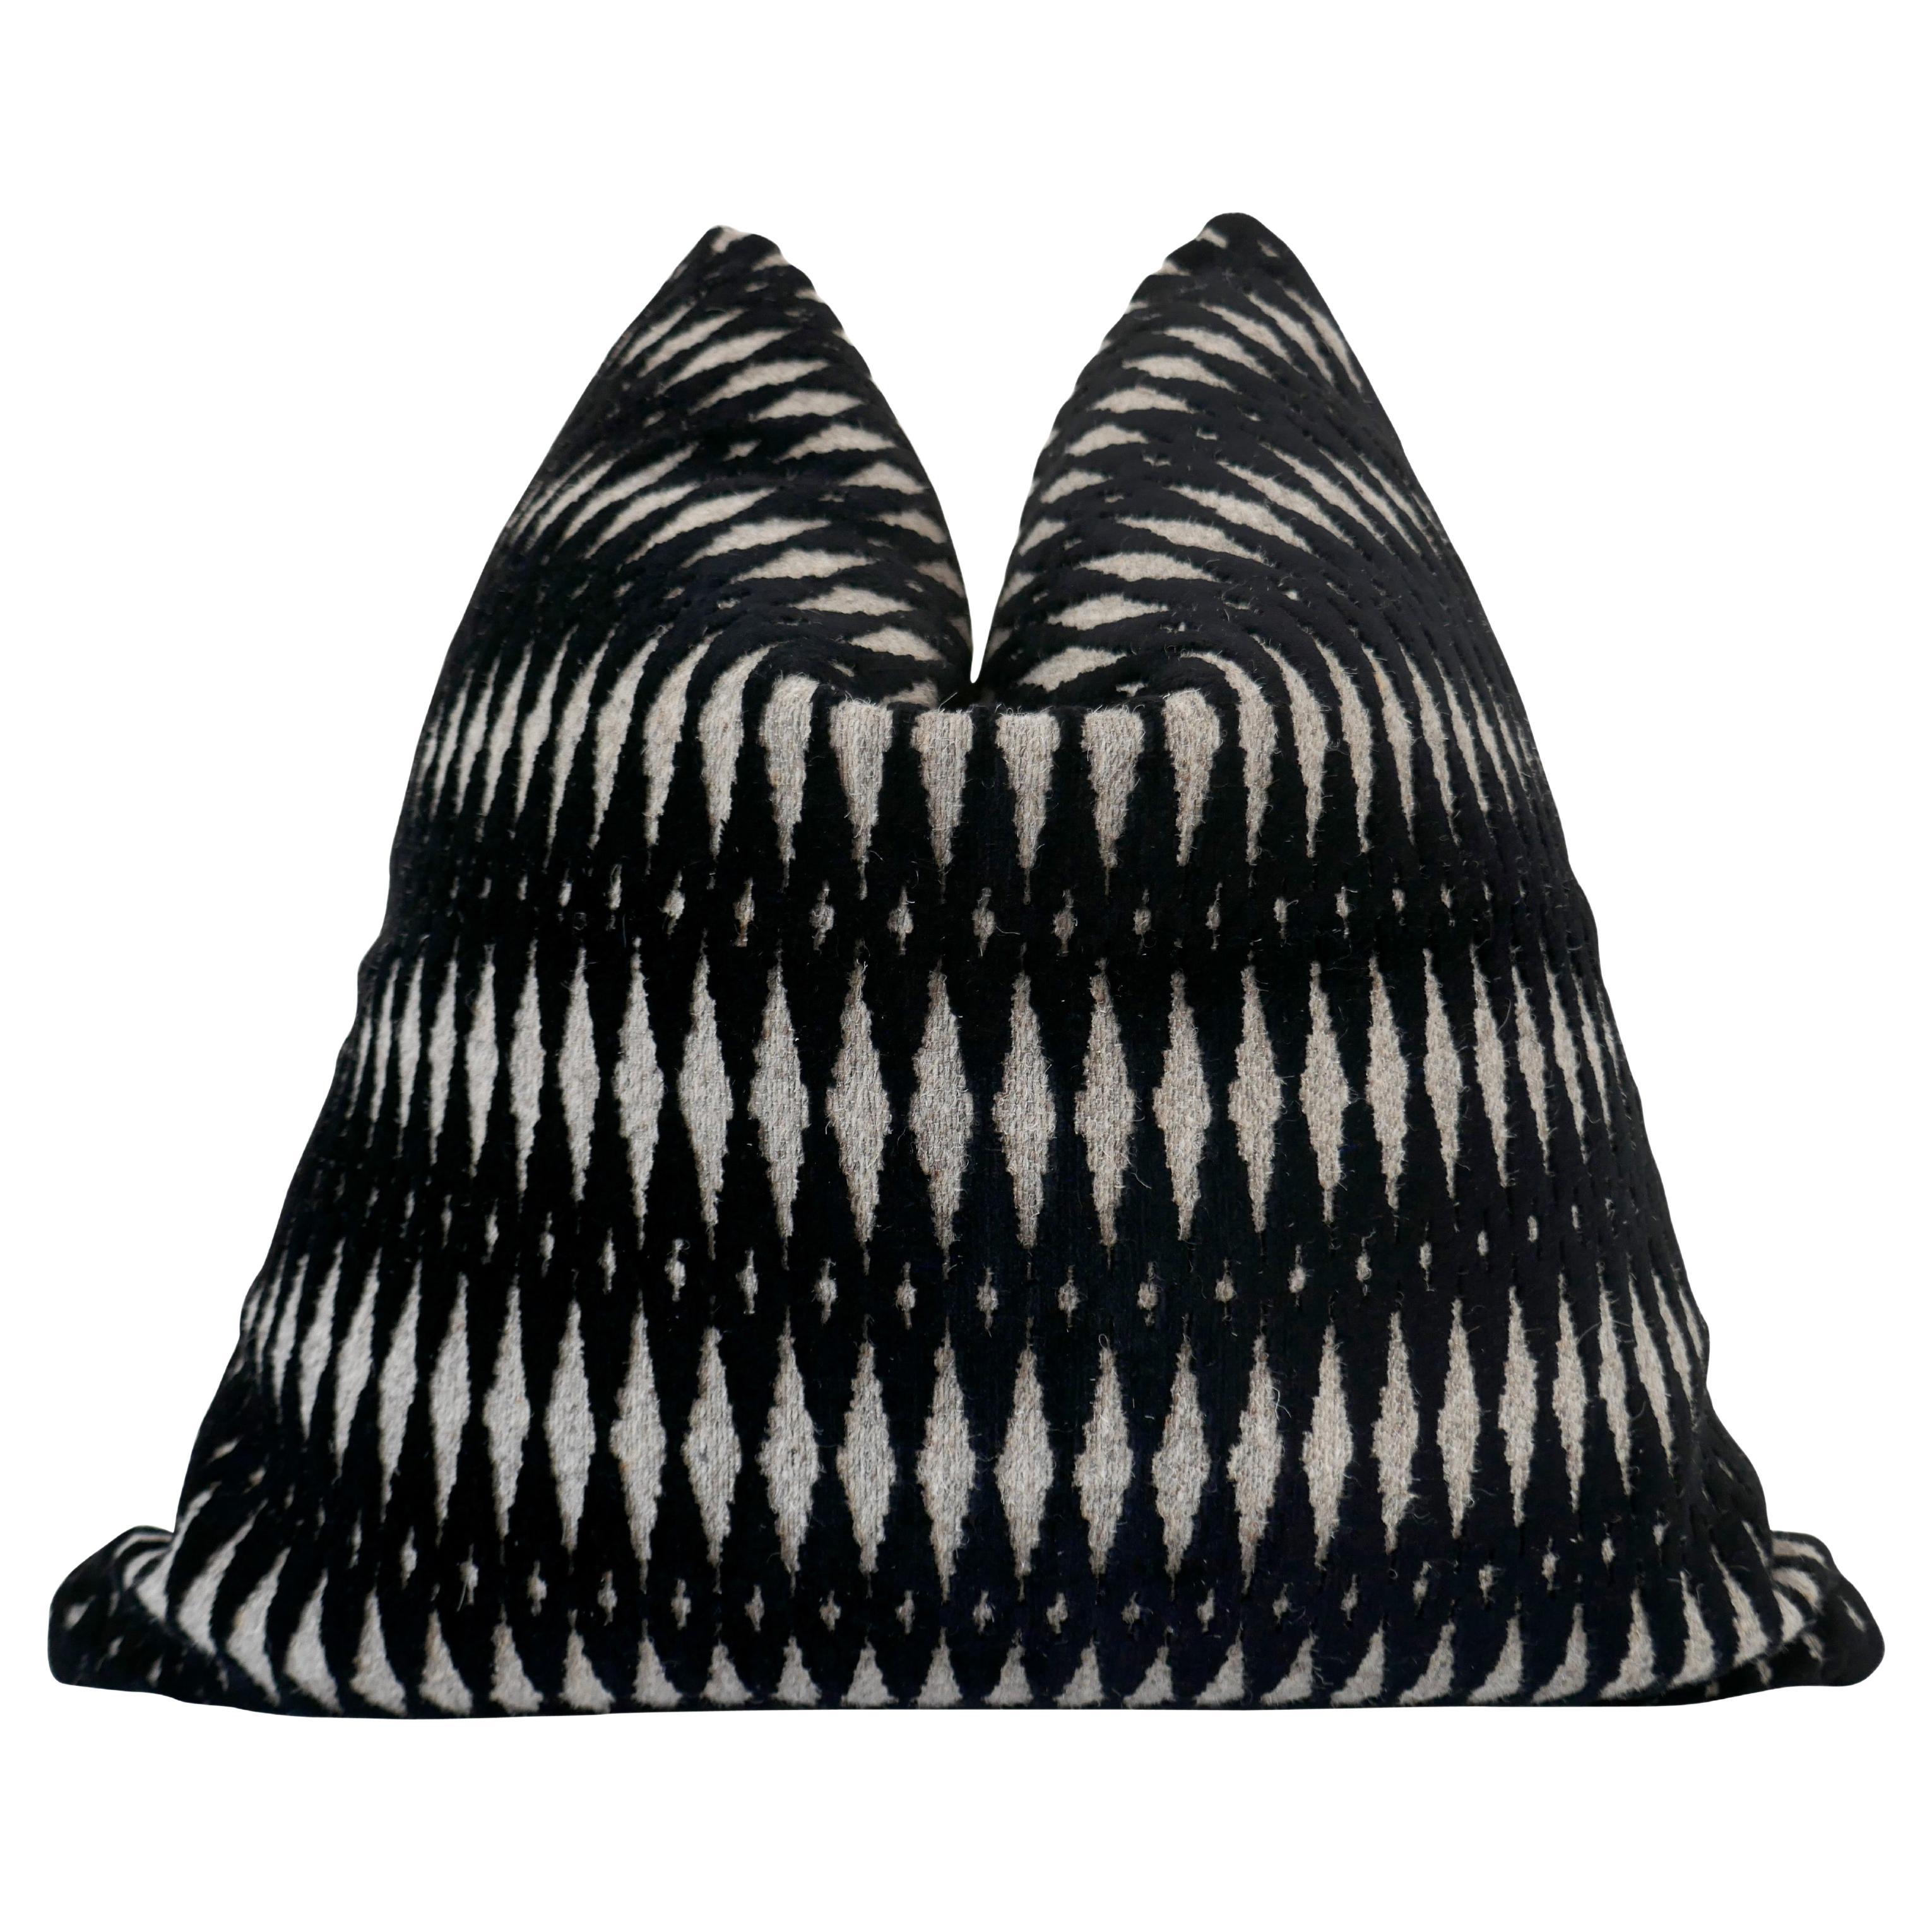 Fragments Identity Belgium Loomed Argos Black Wool Cut Velvet Geometric Pillow For Sale